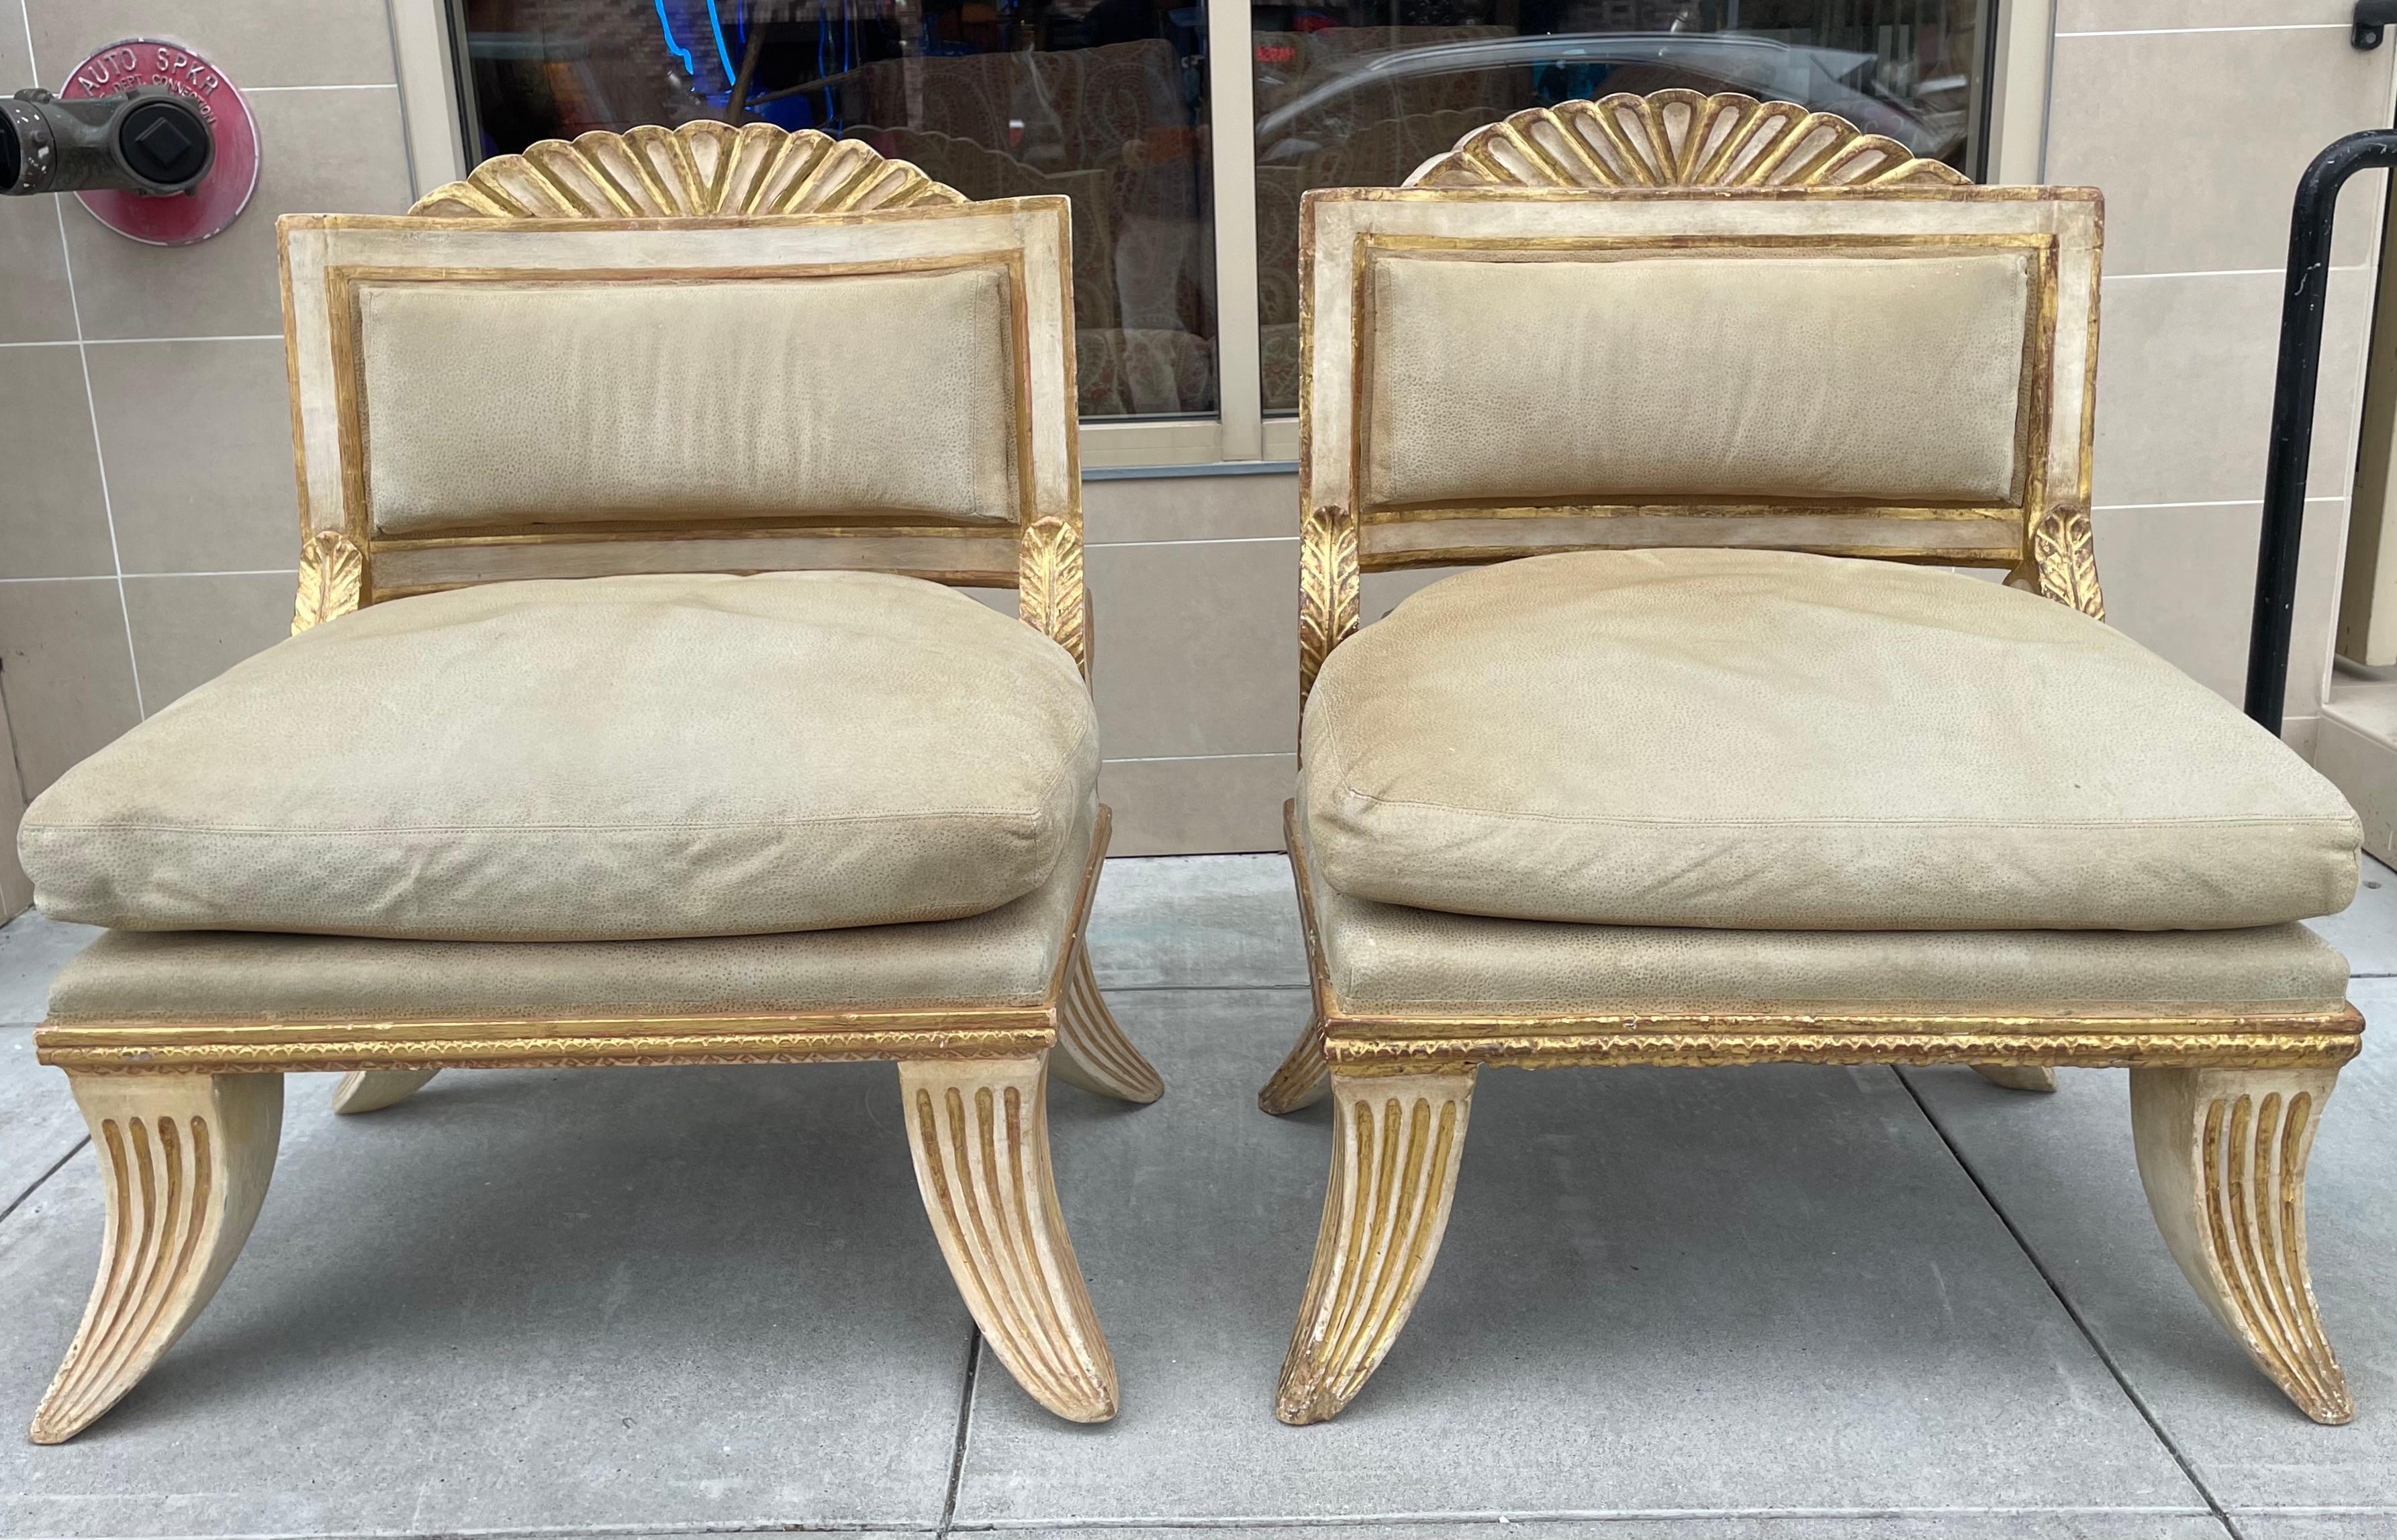 Dieses großzügig bemessene Paar Stühle im schwedischen Stil stammt aus einer geschichtsträchtigen Seacliff-Villa in San Francisco. Sie sind mit einem luxuriösen Wildleder überzogen und äußerst bequem.